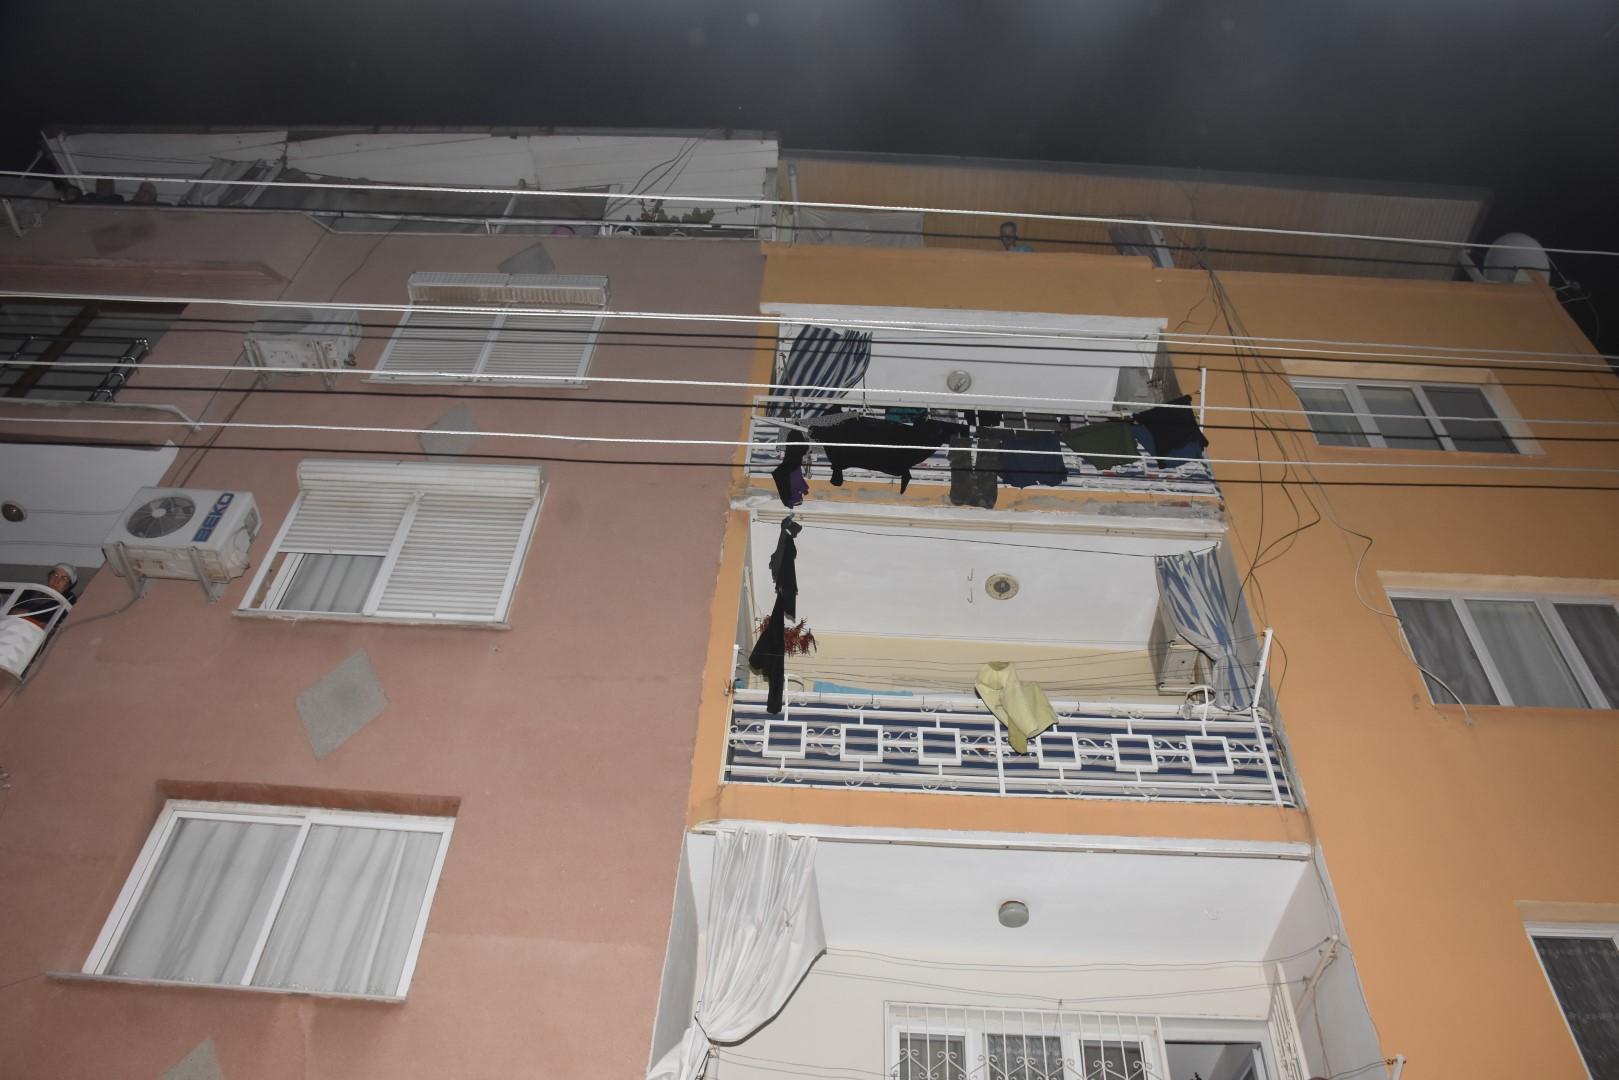 İzmirde ev sahibinin evden çık dediği kiracı, eşyaları sokağa fırlattı